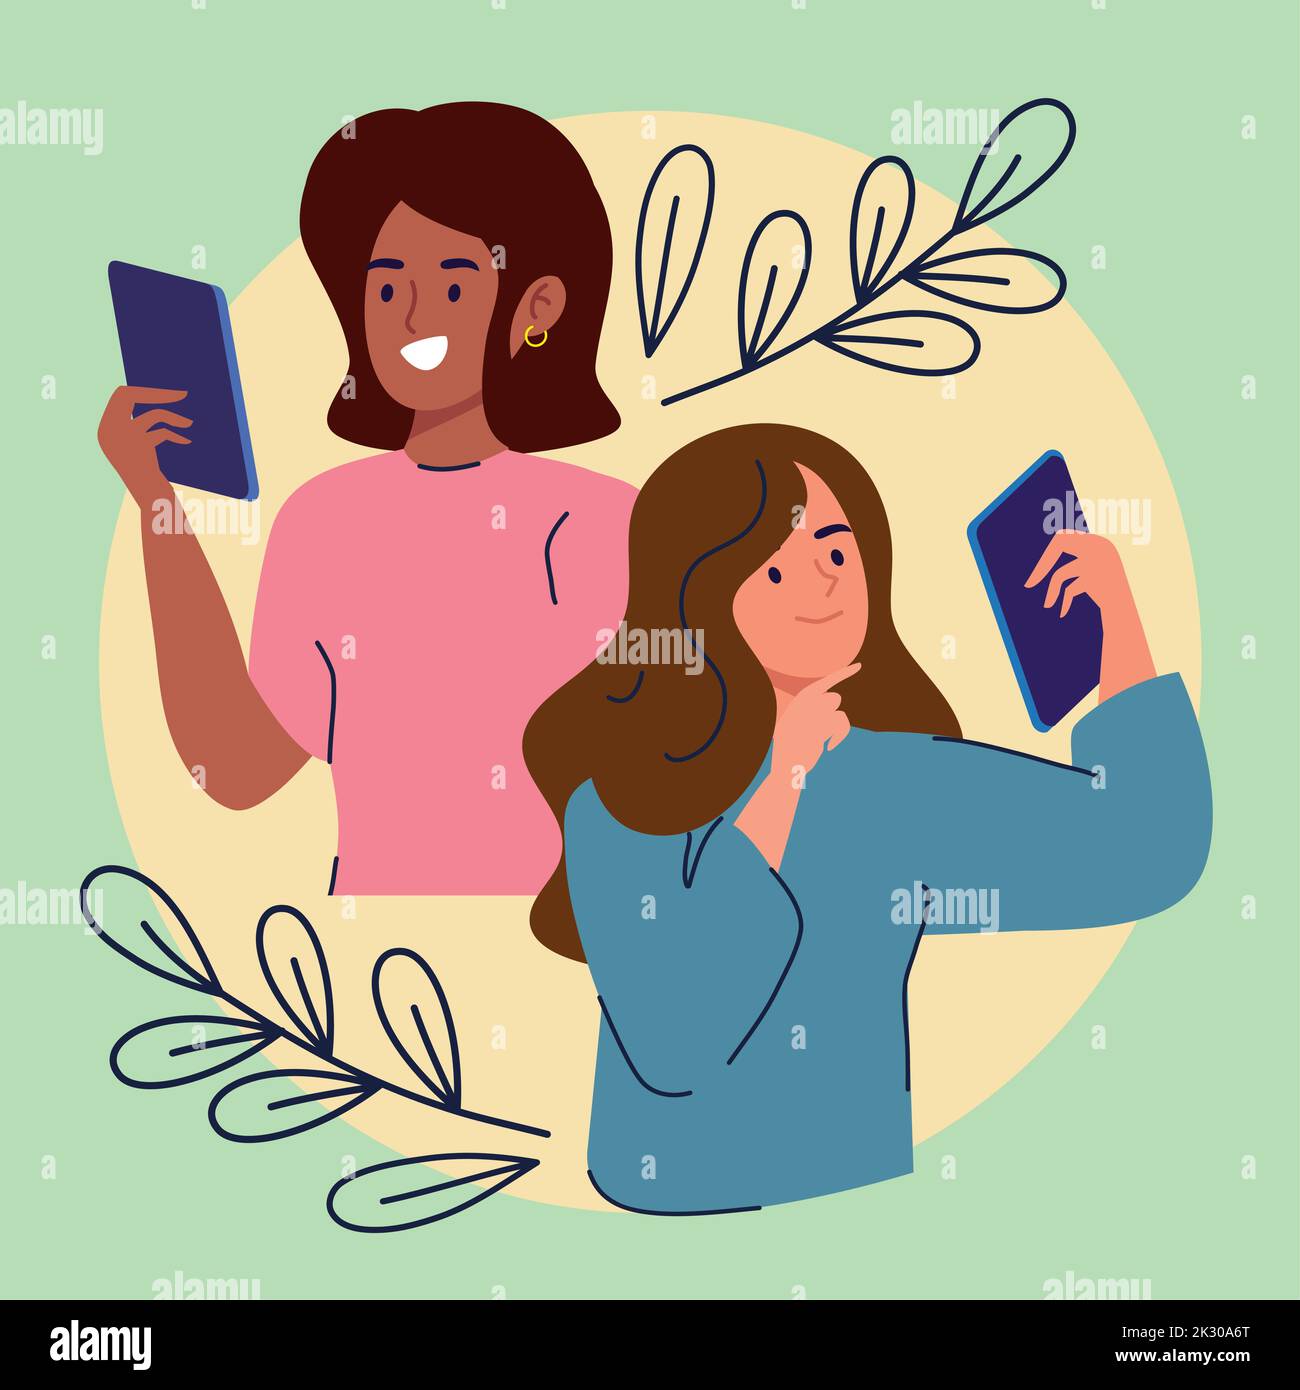 women couple with smartphones Stock Vector